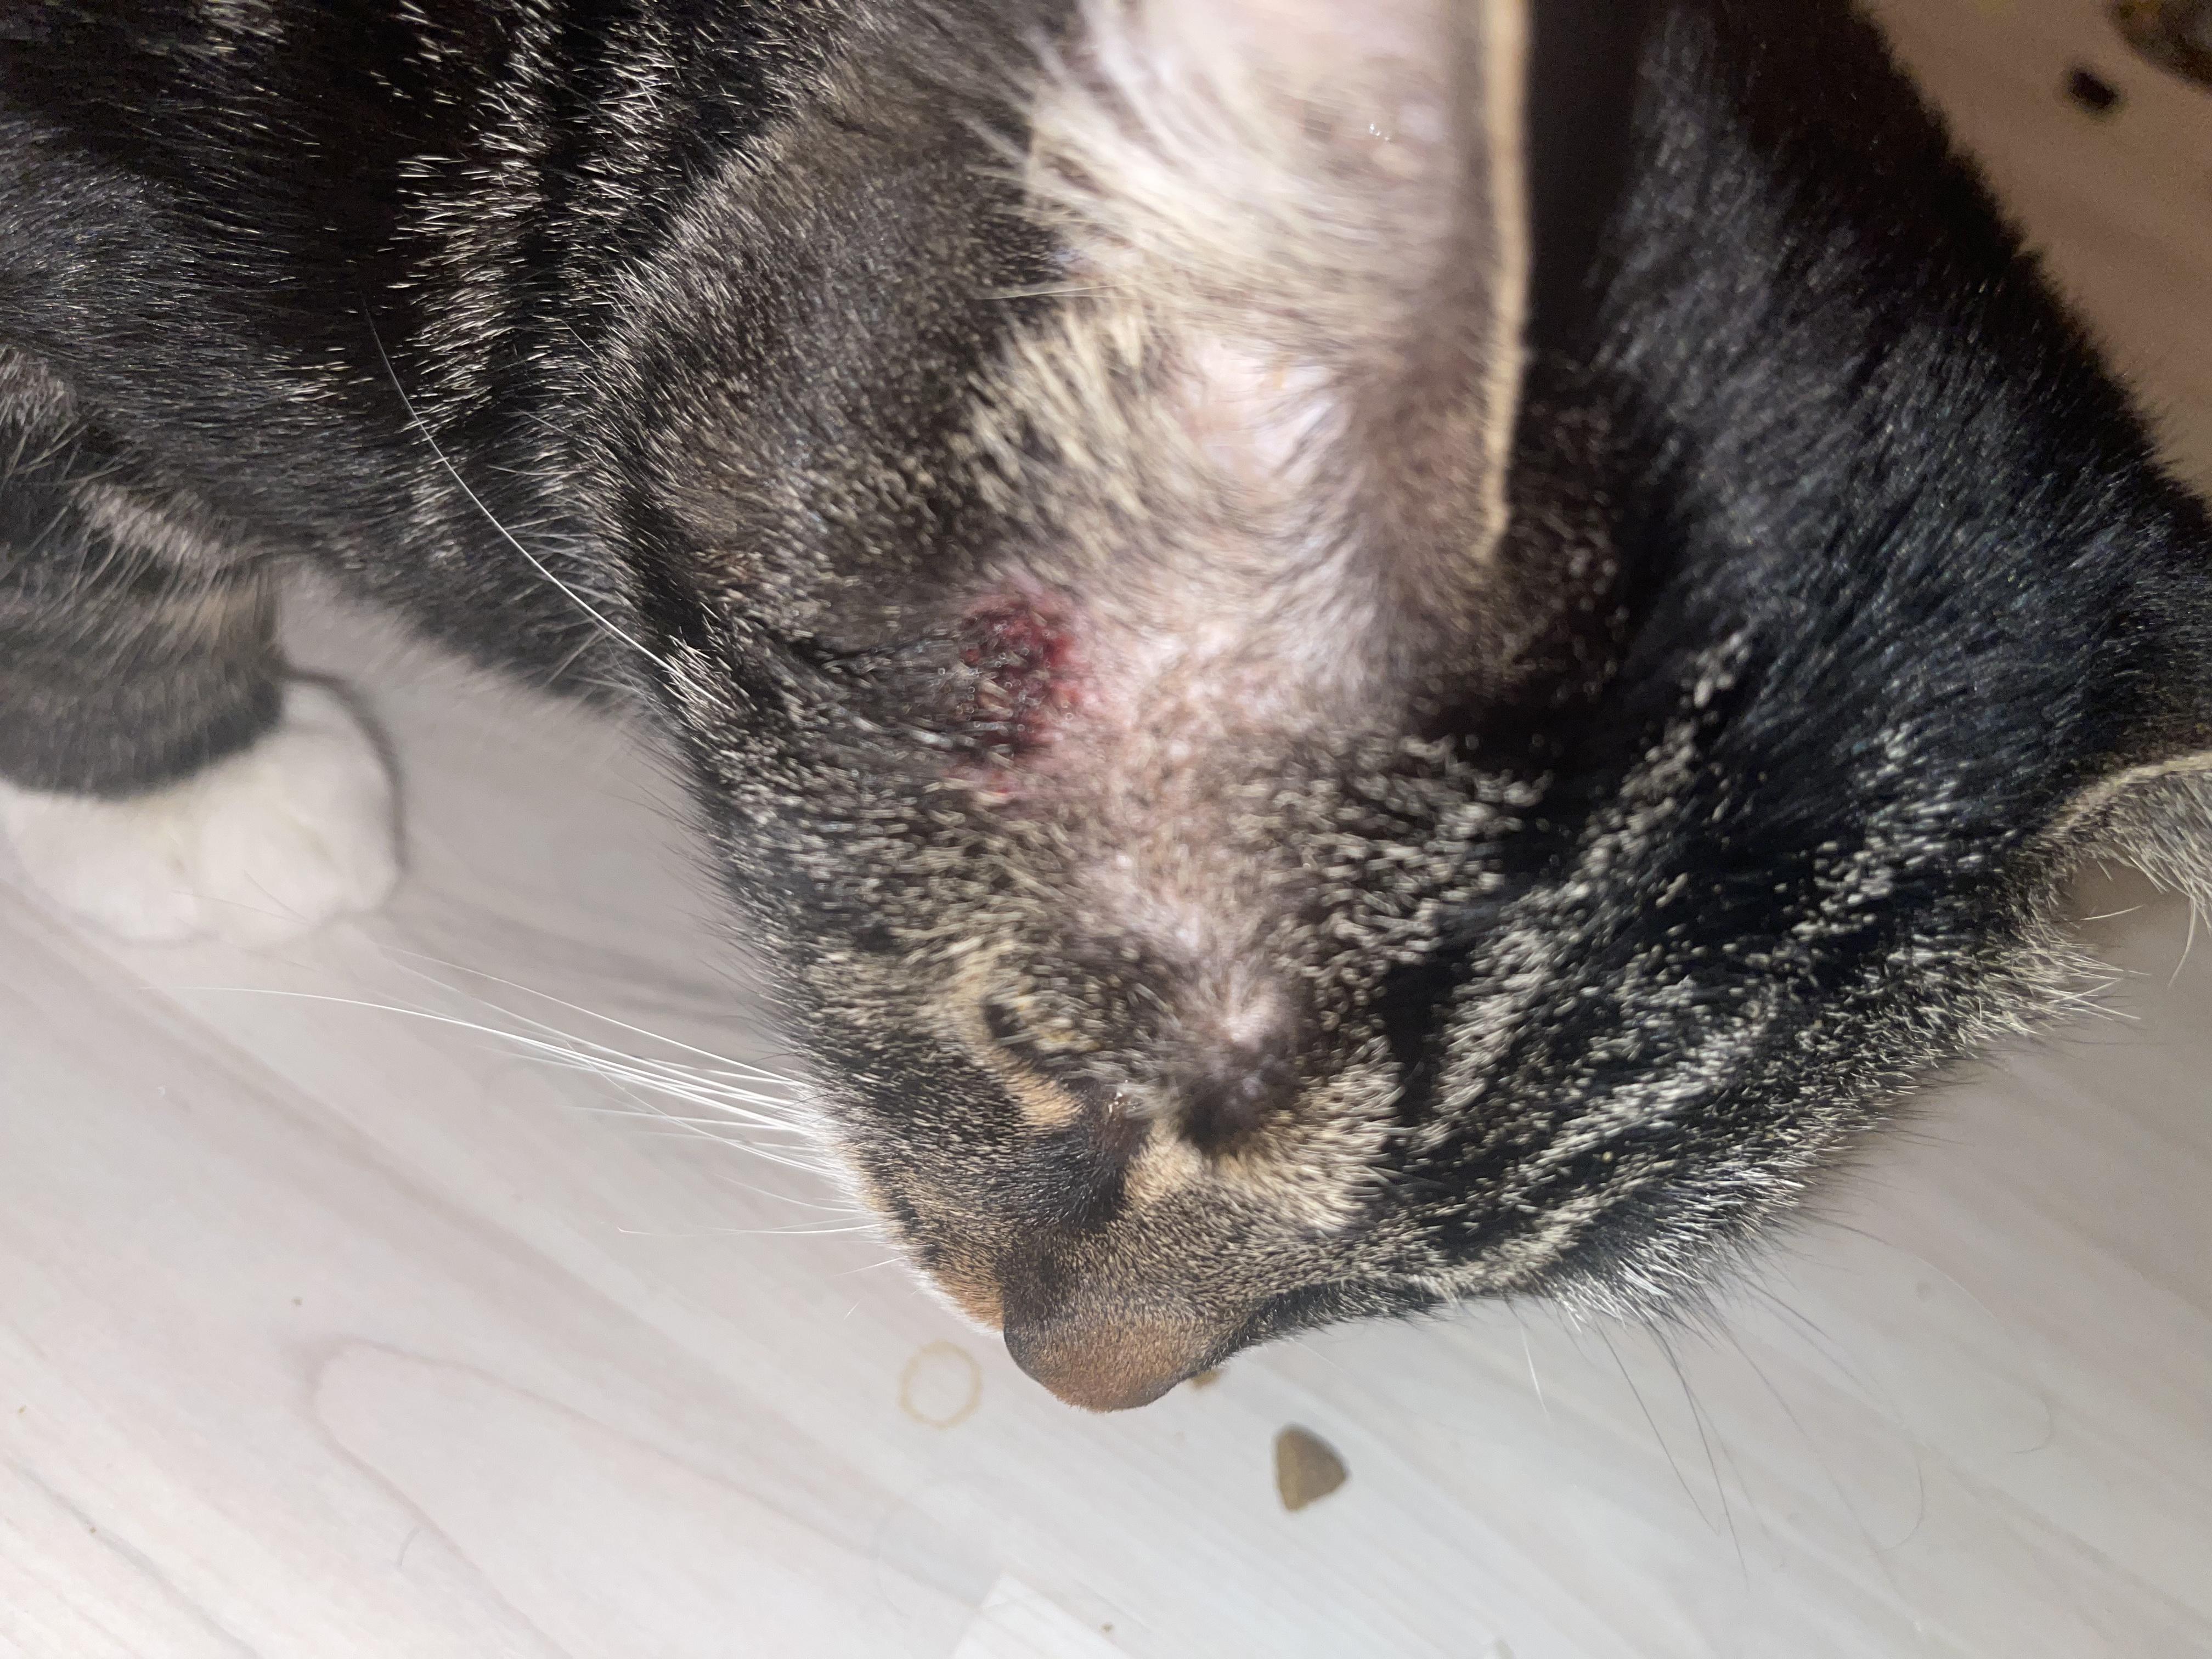 У кота на виске появилась рана, бесплатная консультация ветеринара - вопрос  задан пользователем Alina Popovich про питомца: кошка Без породы (домашняя  кошка)